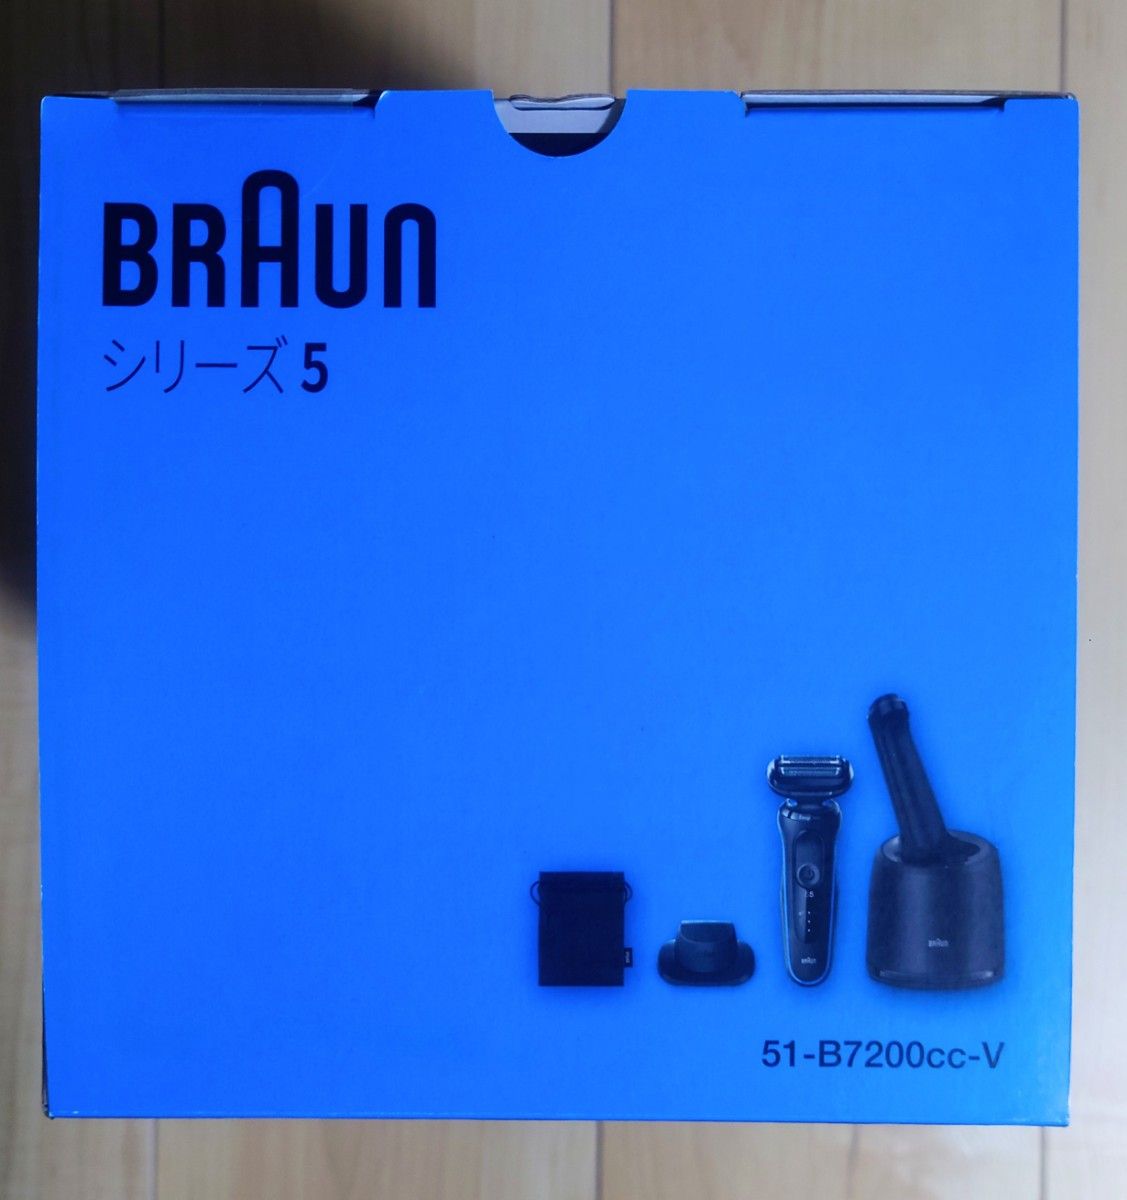 ブラウン 51-B7200CC-V 電気シェーバー シリーズ5 (3枚刃) ブルー